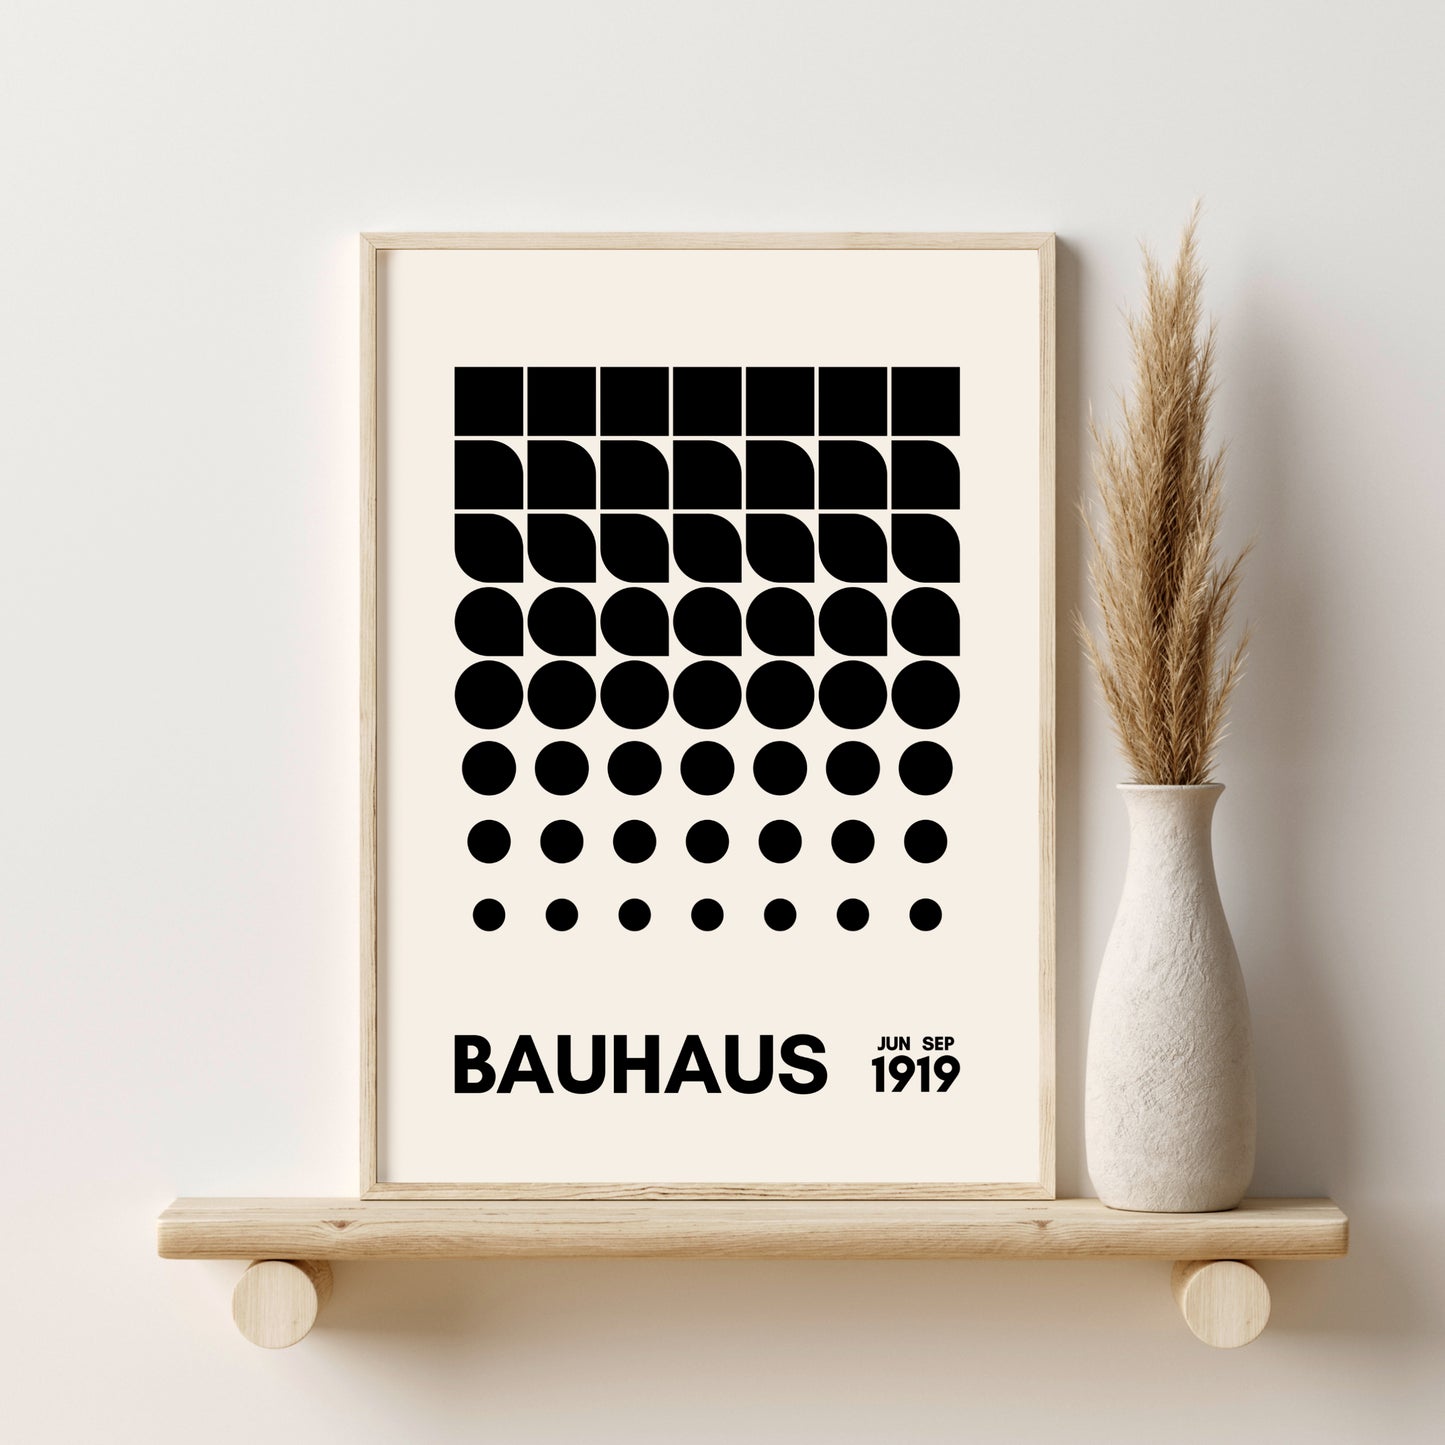 Printed Bauhaus Mid Century Modern Wall Art Set of 6 Prints